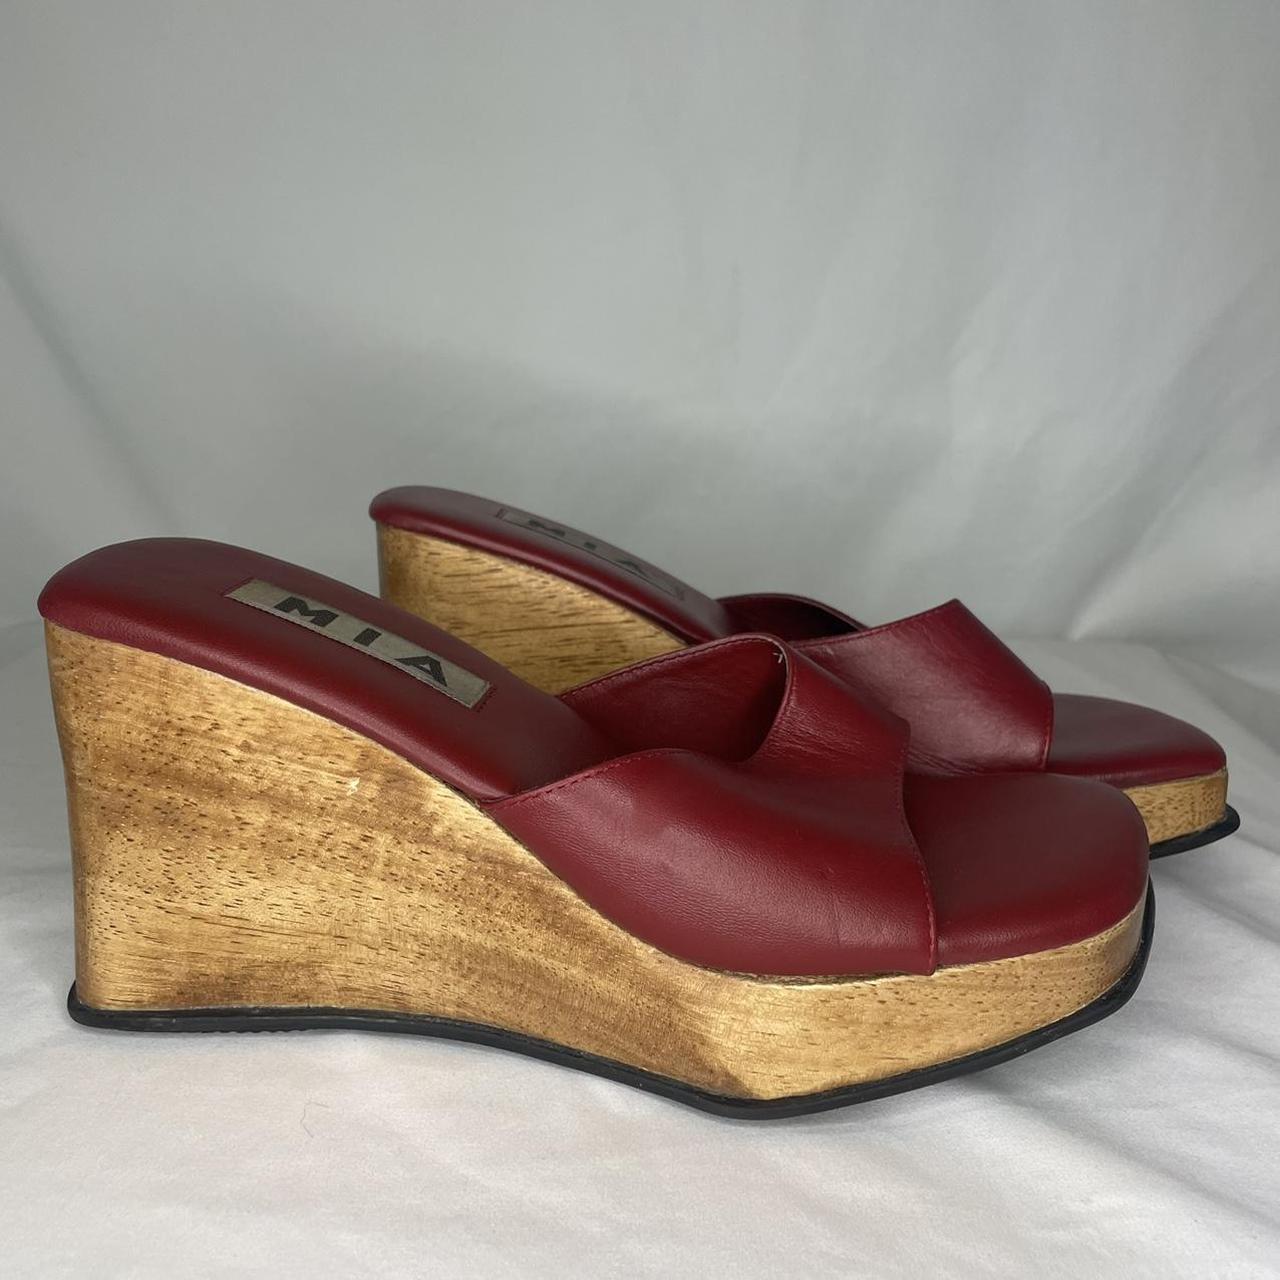 vintage wedge heels by MIA, red leather, wood (i... - Depop